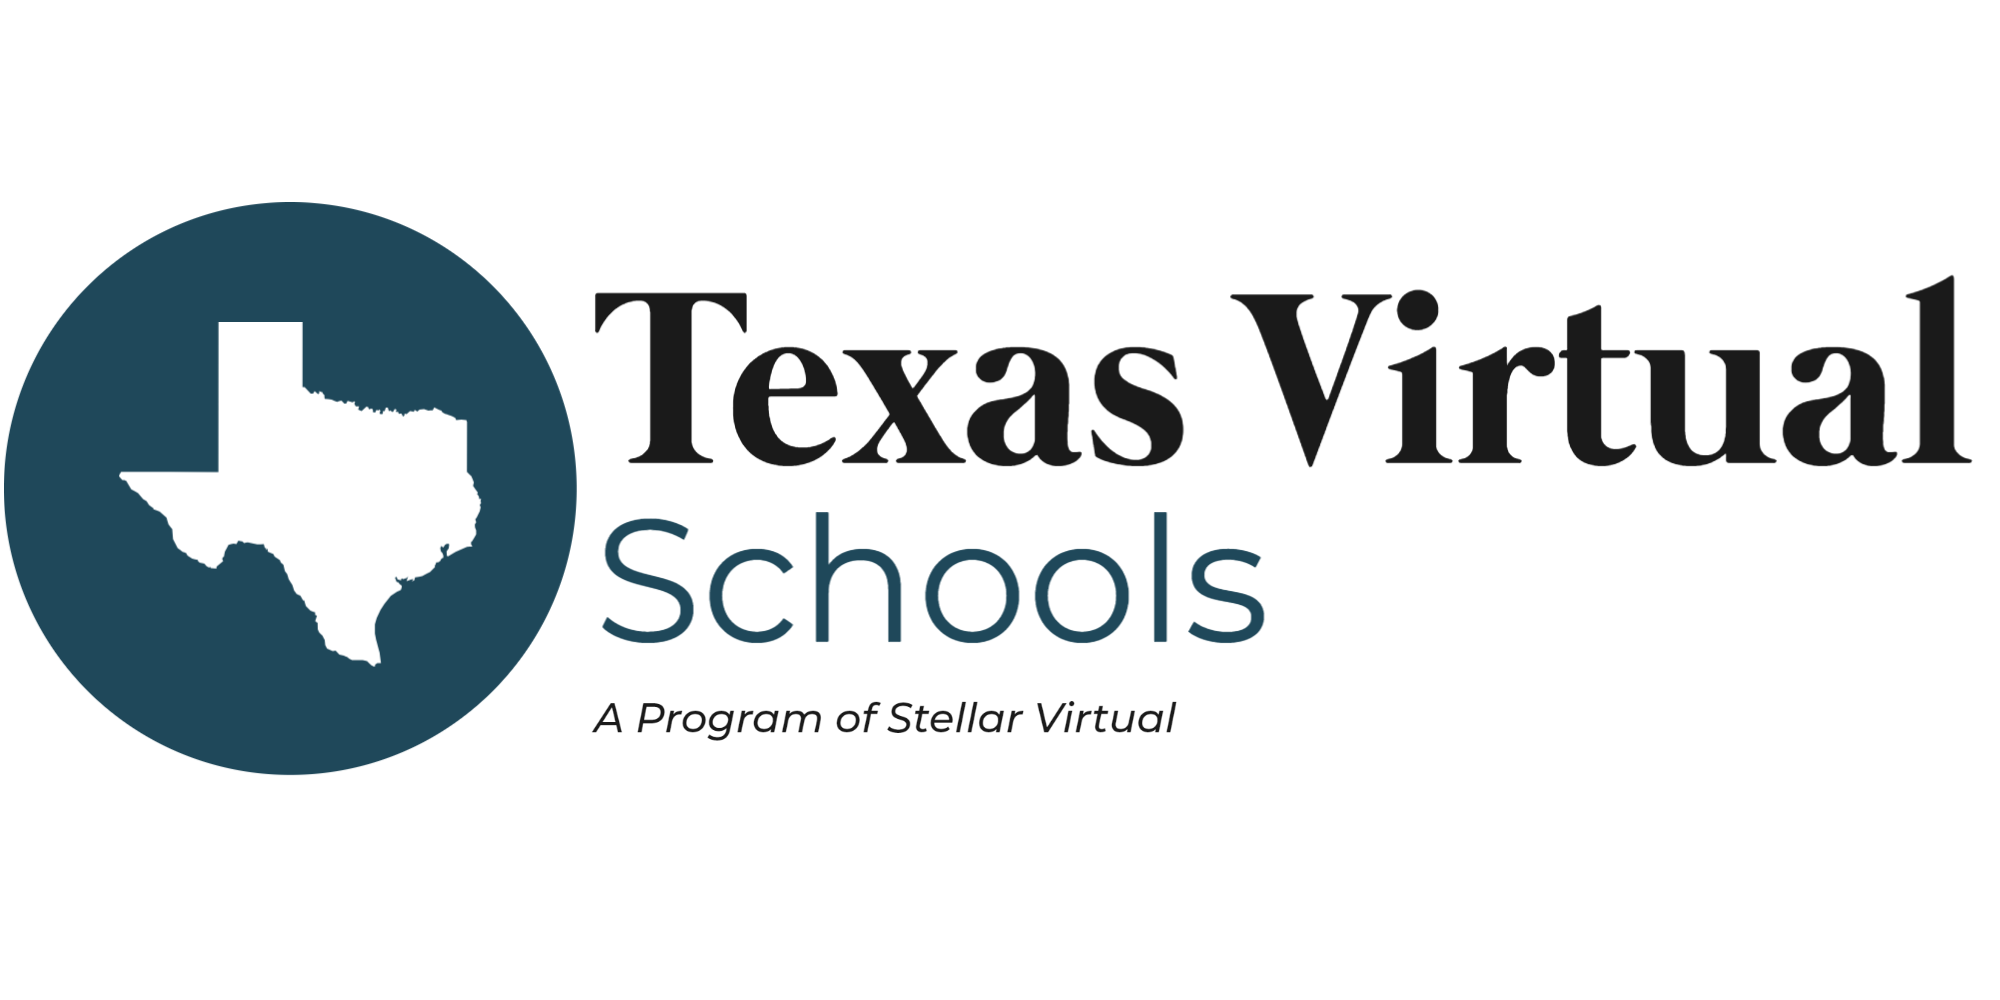 Texas Virtual Schools